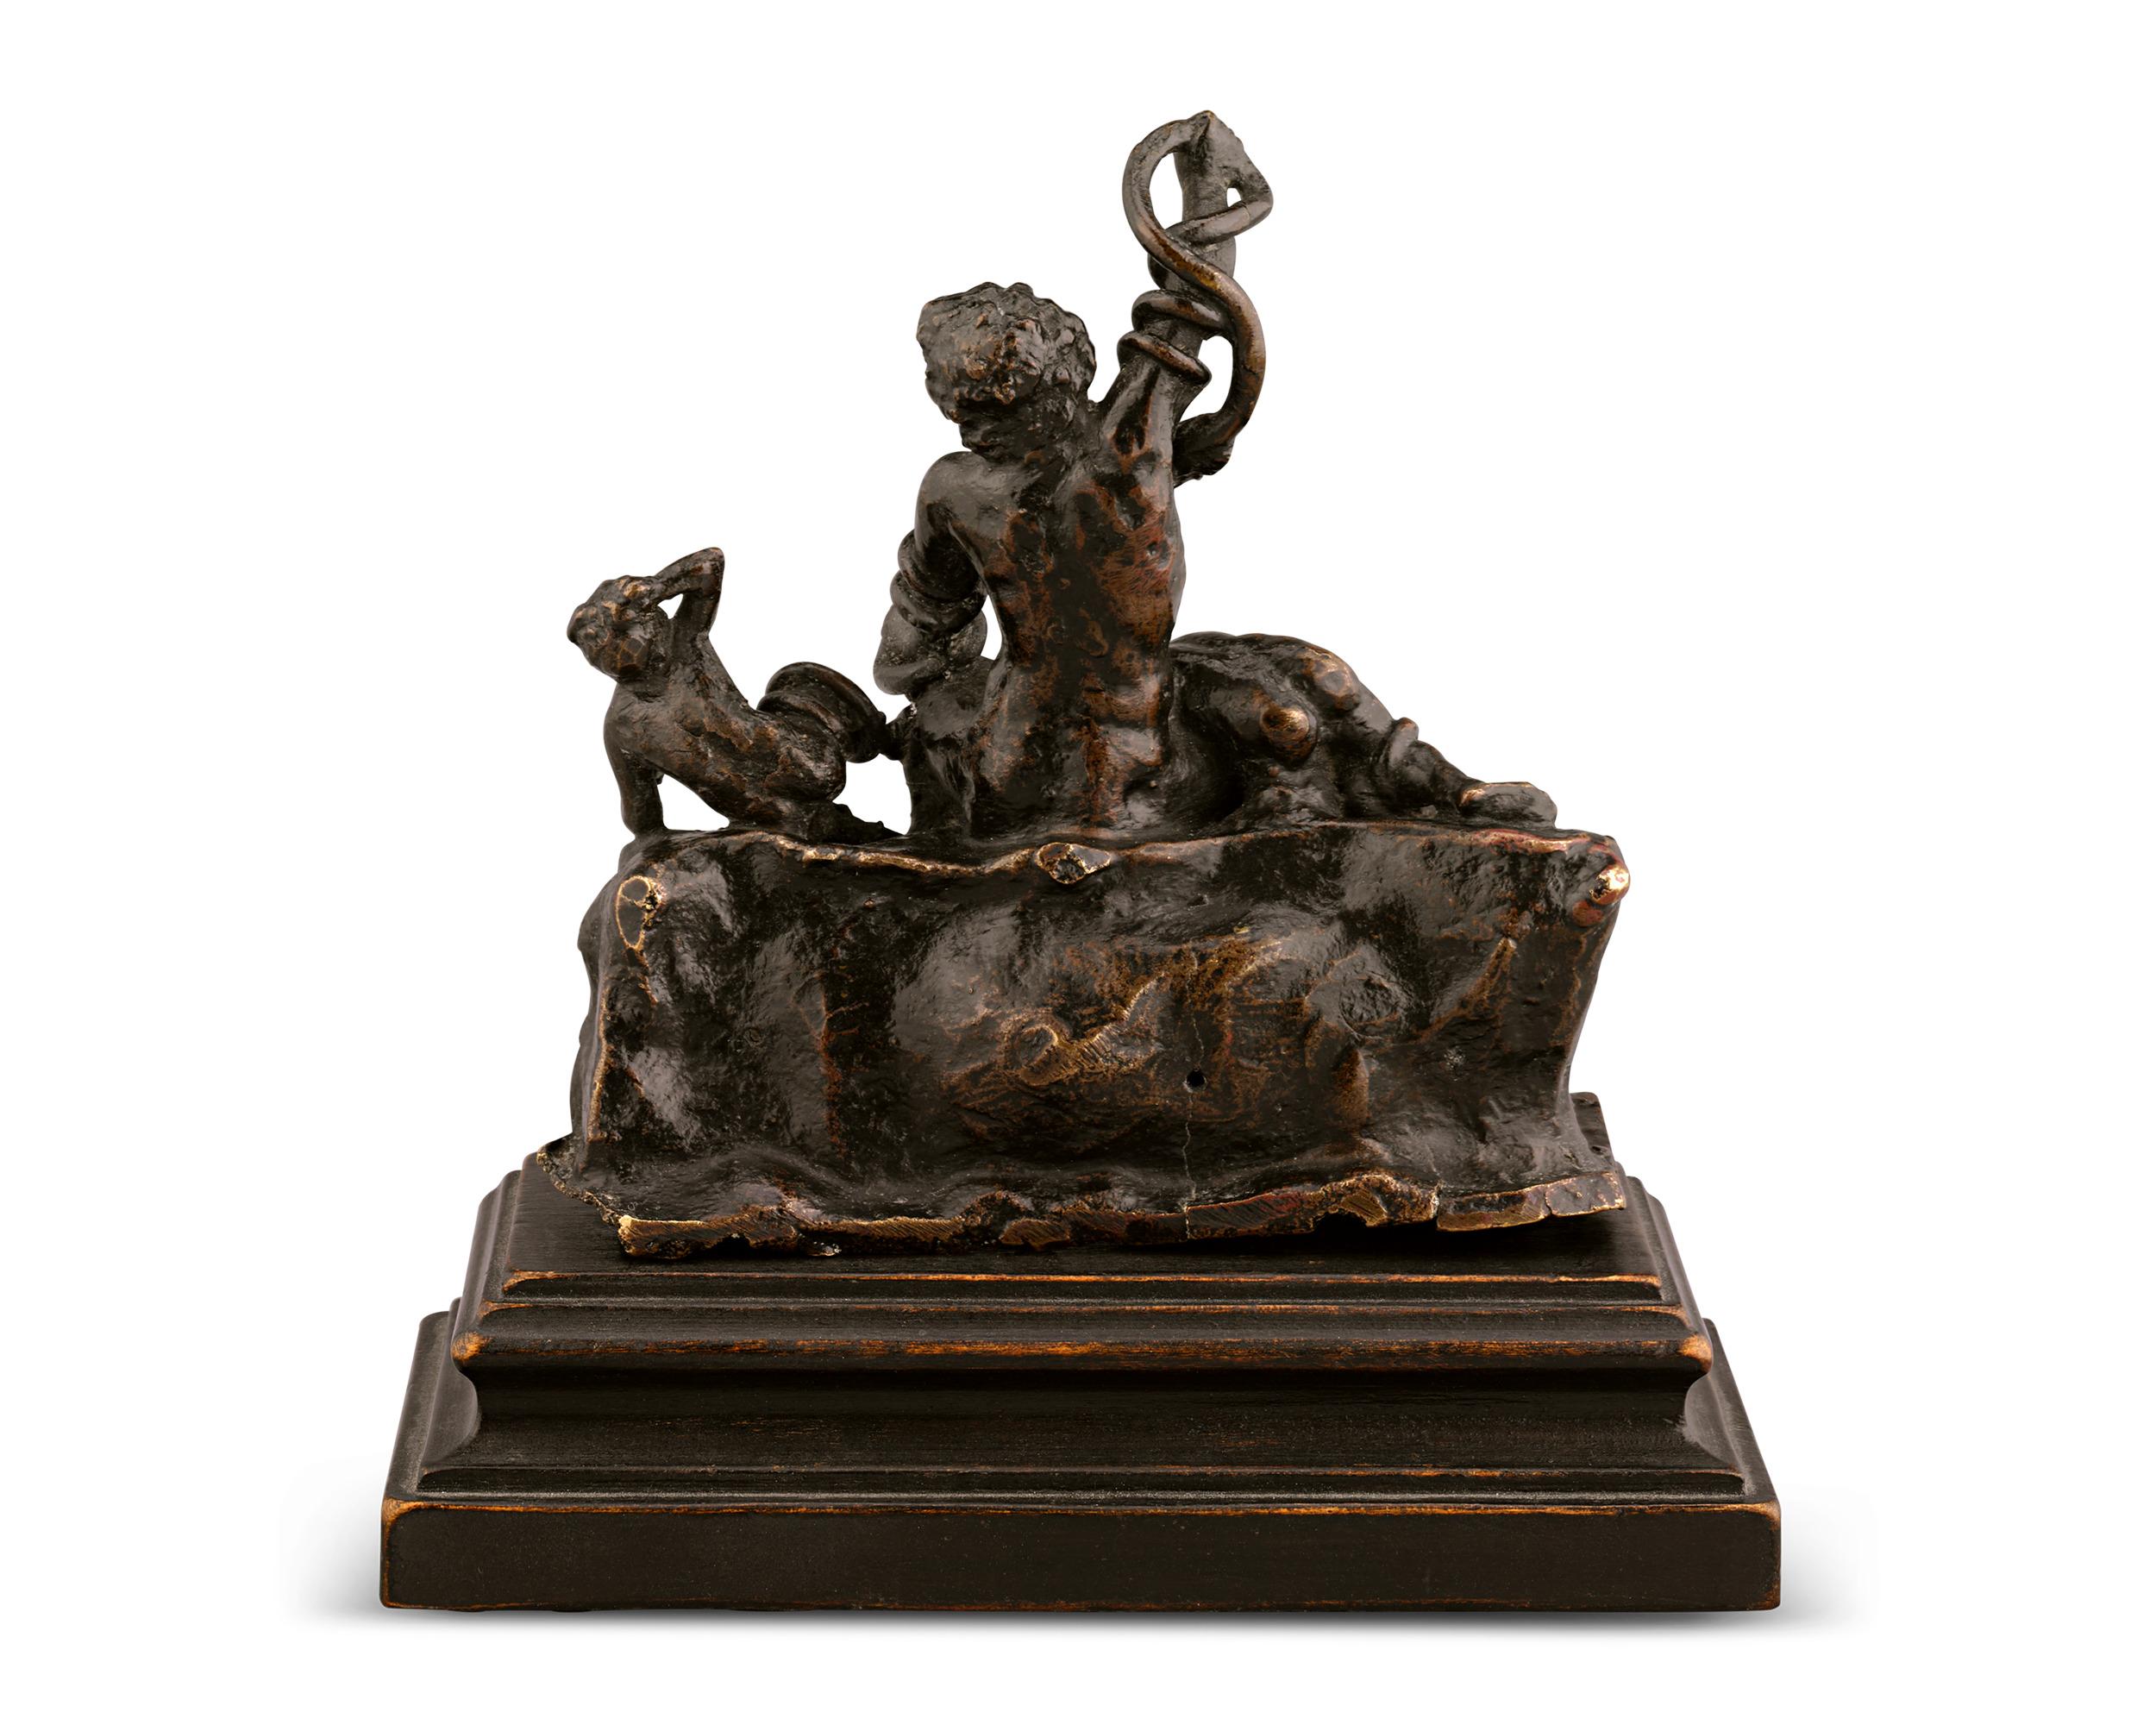 Adriaen de Vries
1556-1626  Niederländisch

Laokoon und seine Söhne

Bronze

Diese Bronzeskulptur ist eine bemerkenswerte künstlerische Leistung des famosen niederländischen Künstlers Adriaen de Vries. Die Bronze ist ein Meisterwerk der barocken